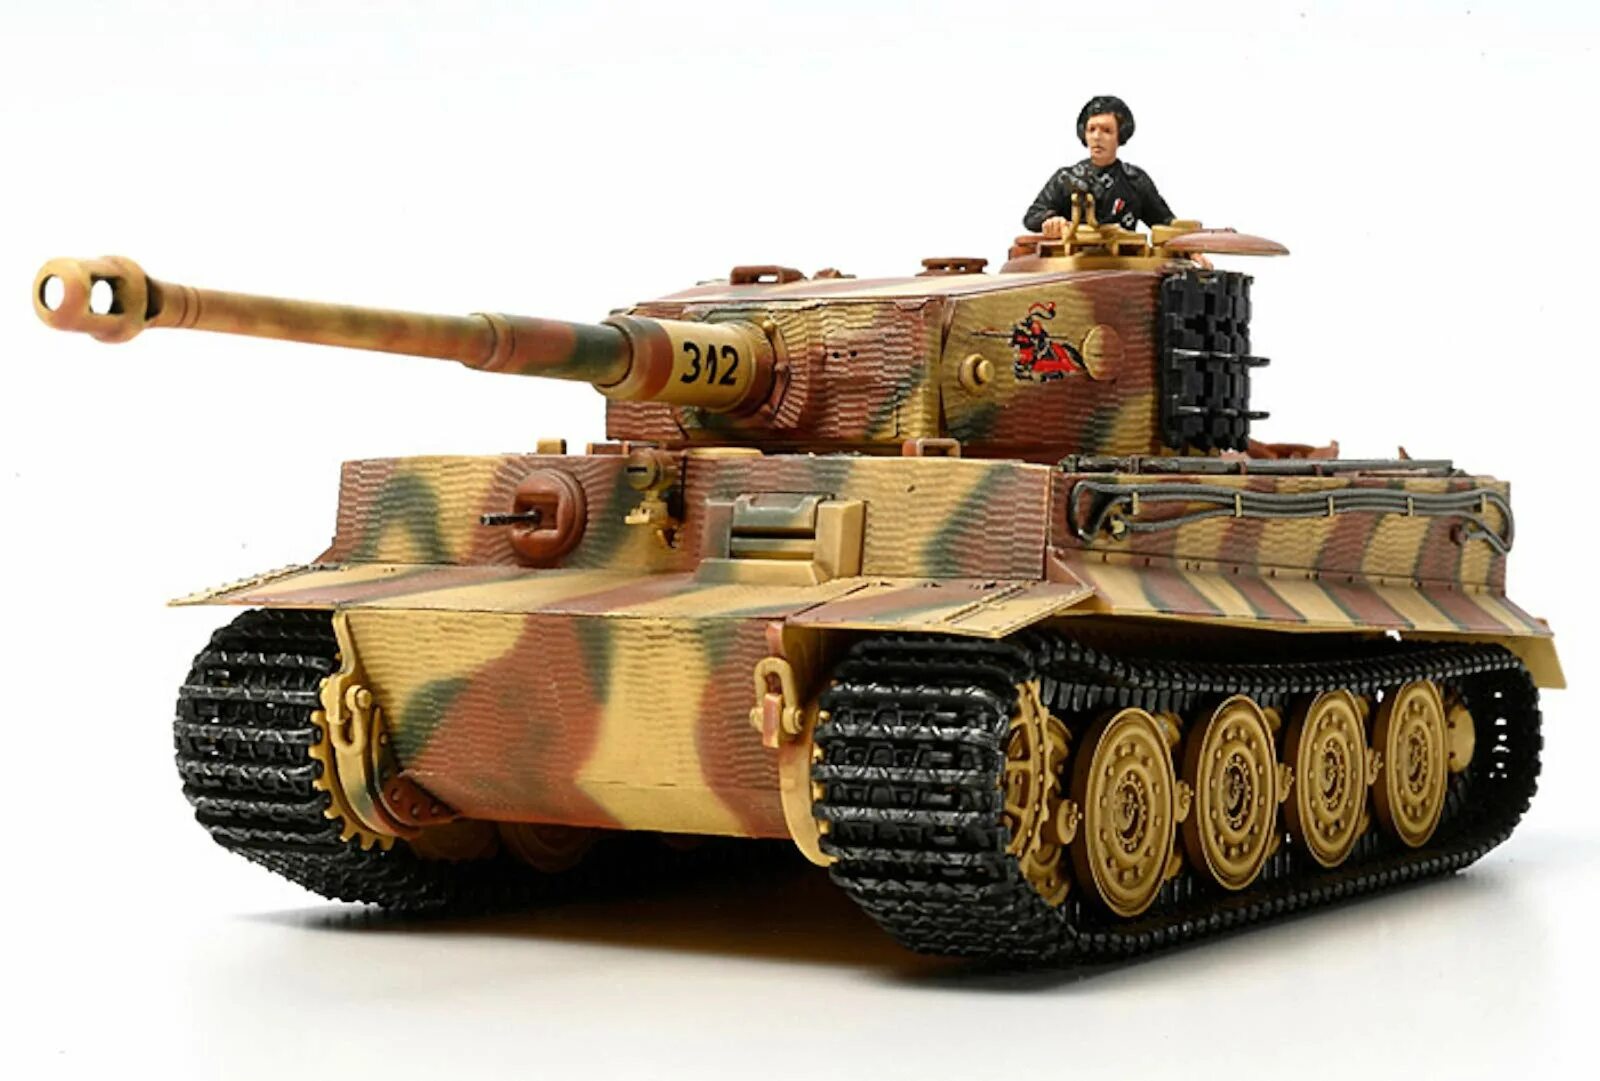 Сборная модель танка тигр 1/35 Тамия. Танк тигр Тамия. Танк тигр 2 модель Тамия. Танк Tamiya 1/48. Немецкий тяжелый танк тигр